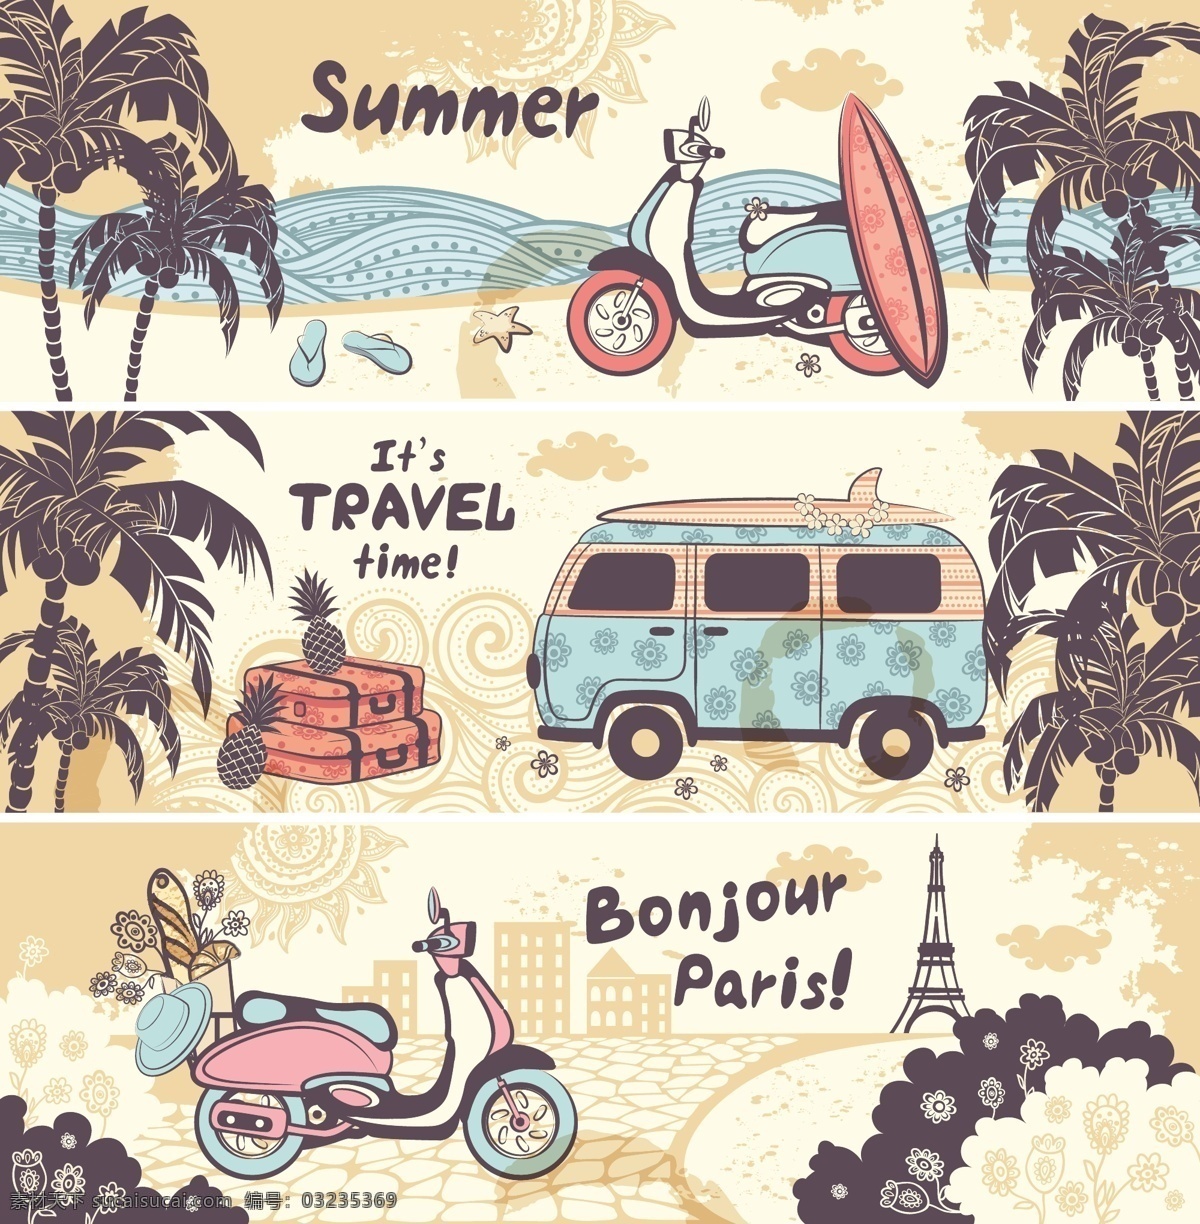 夏日 度假 沙滩 椰树 卡通 矢量 旅游 树林 复古 创意 涂鸦 英文 小清新 填充 插画 背景 海报 广告 包装 印刷